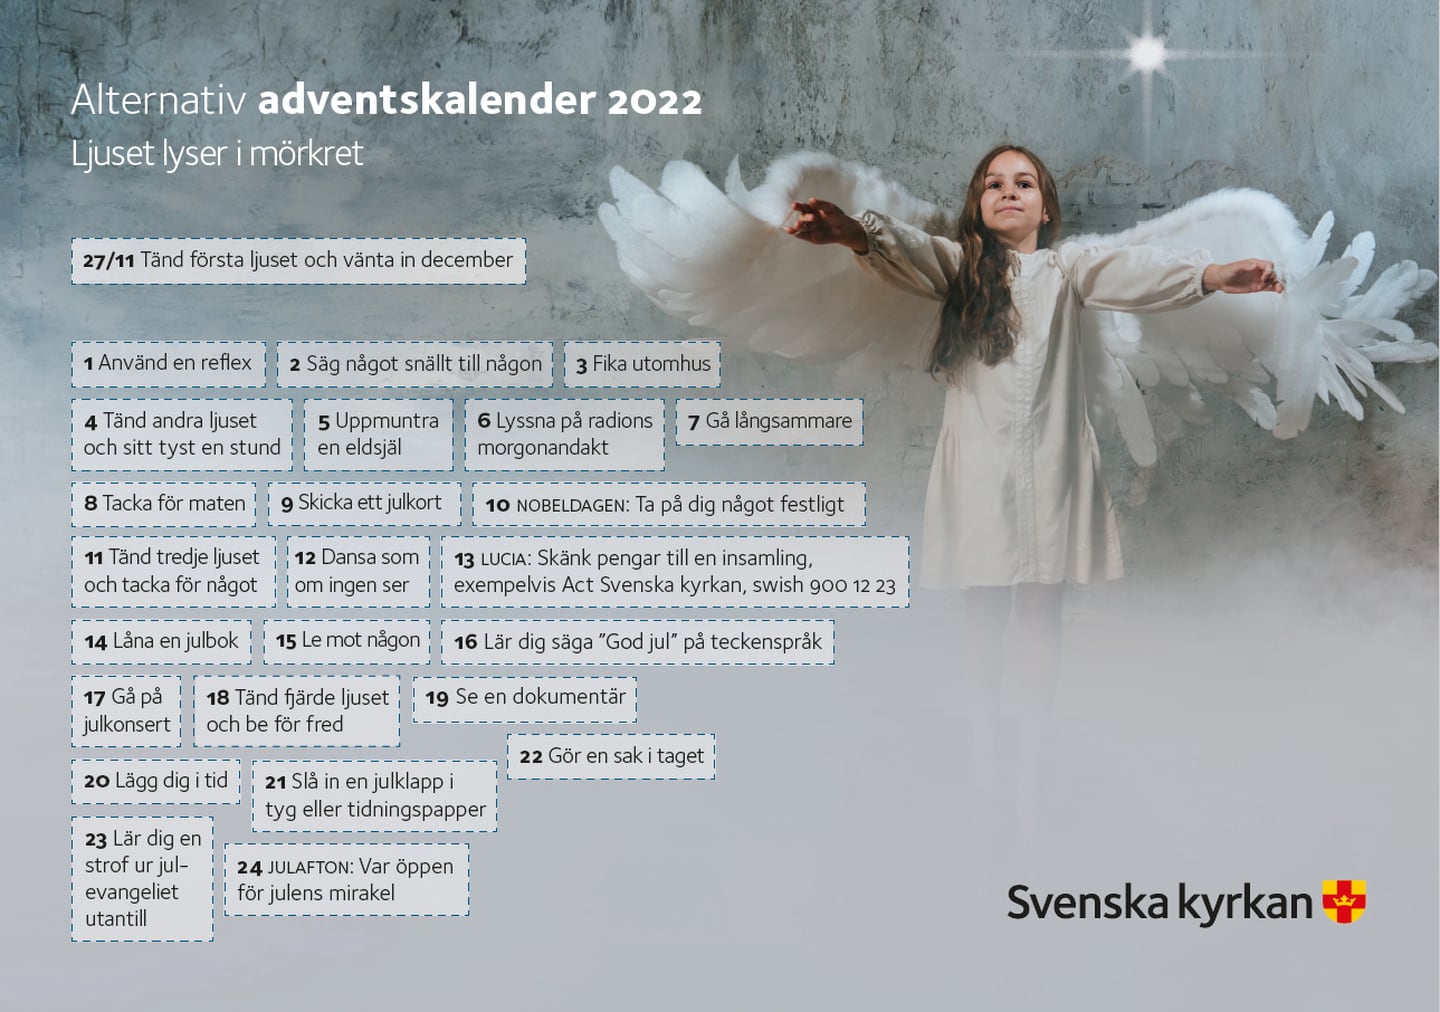 Alternativa adventskalendern gjord av Svenska kyrkan i Umeå.